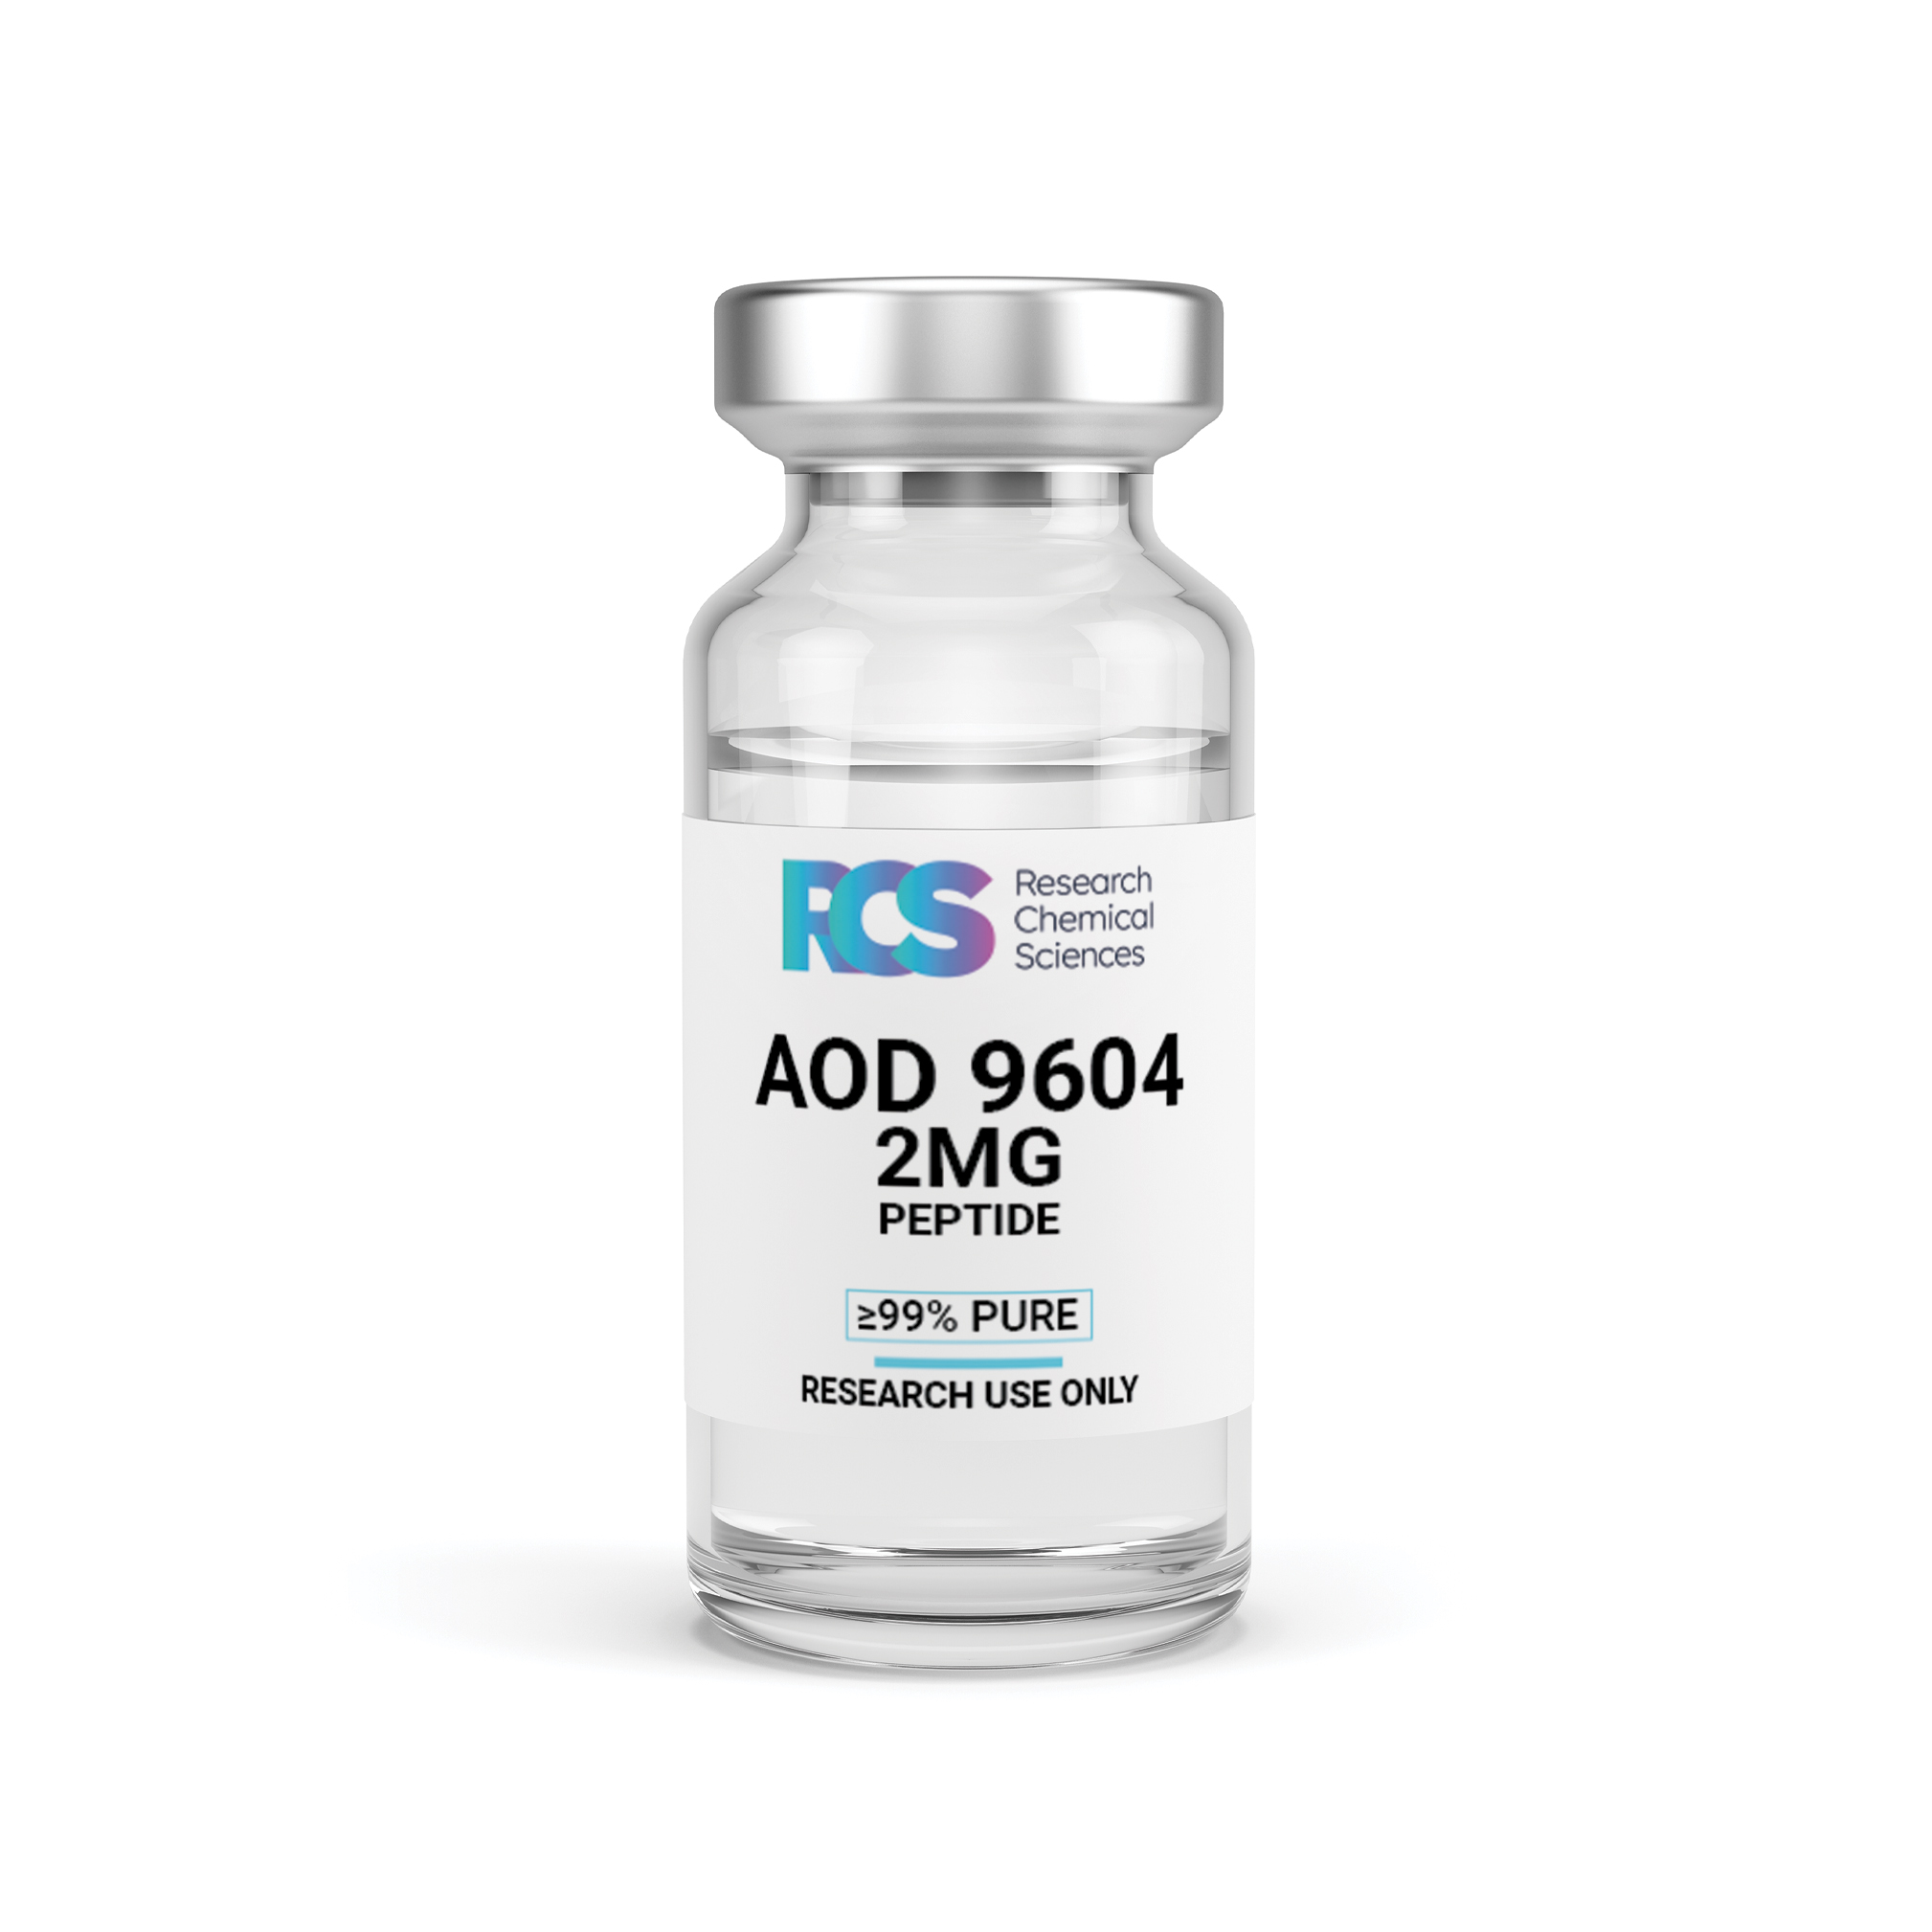 RCS-AOD9604-Peptide-2MG-Side-1